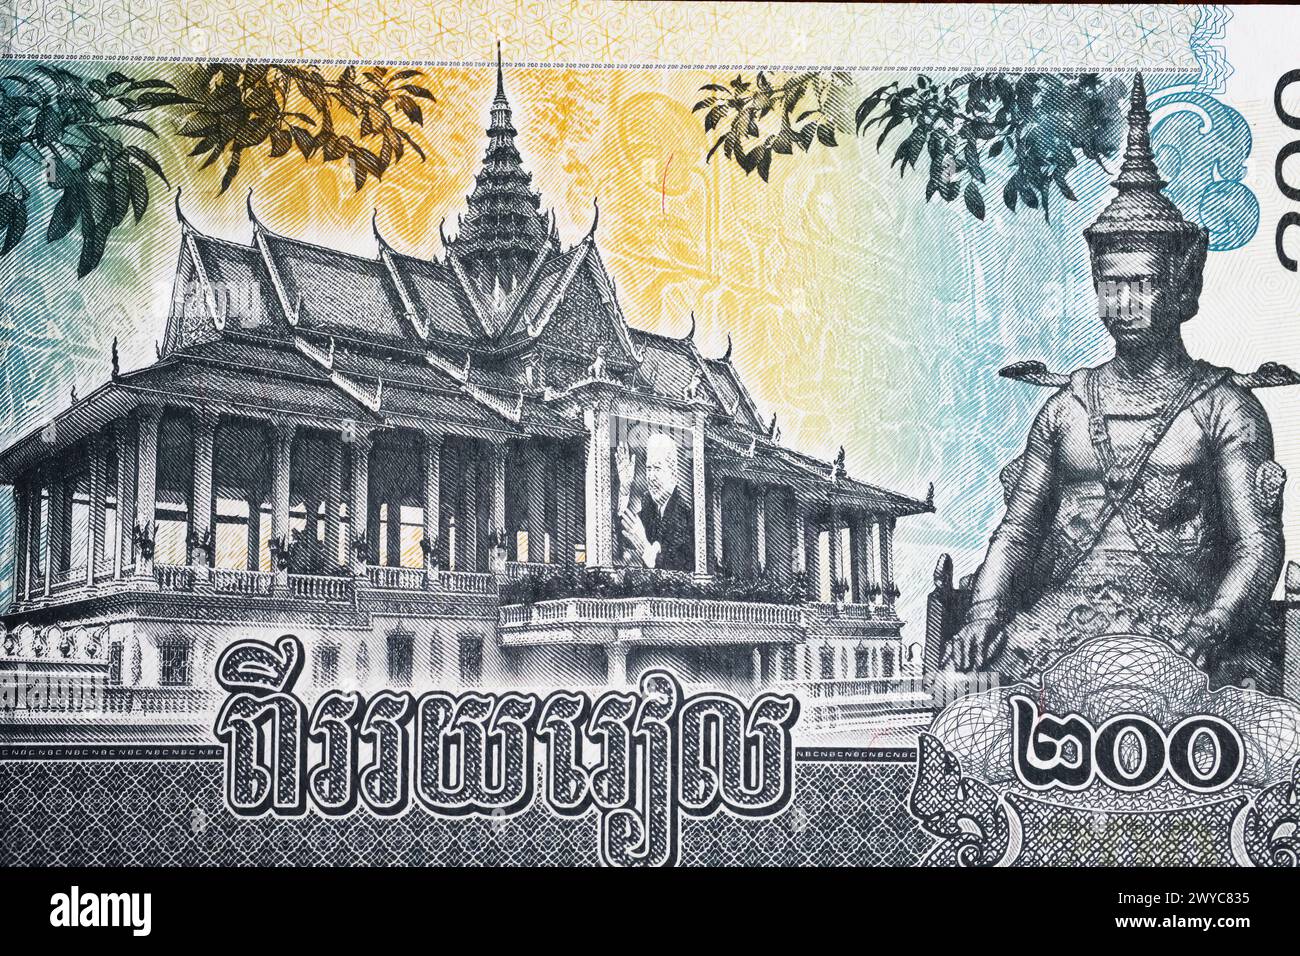 Preah Thineang Chan Chhaya (padiglione al chiaro di luna), statua del re Sisowath sulla banconota del 200 Riel Cambogia del 2022 (focalizzata sul centro) Foto Stock